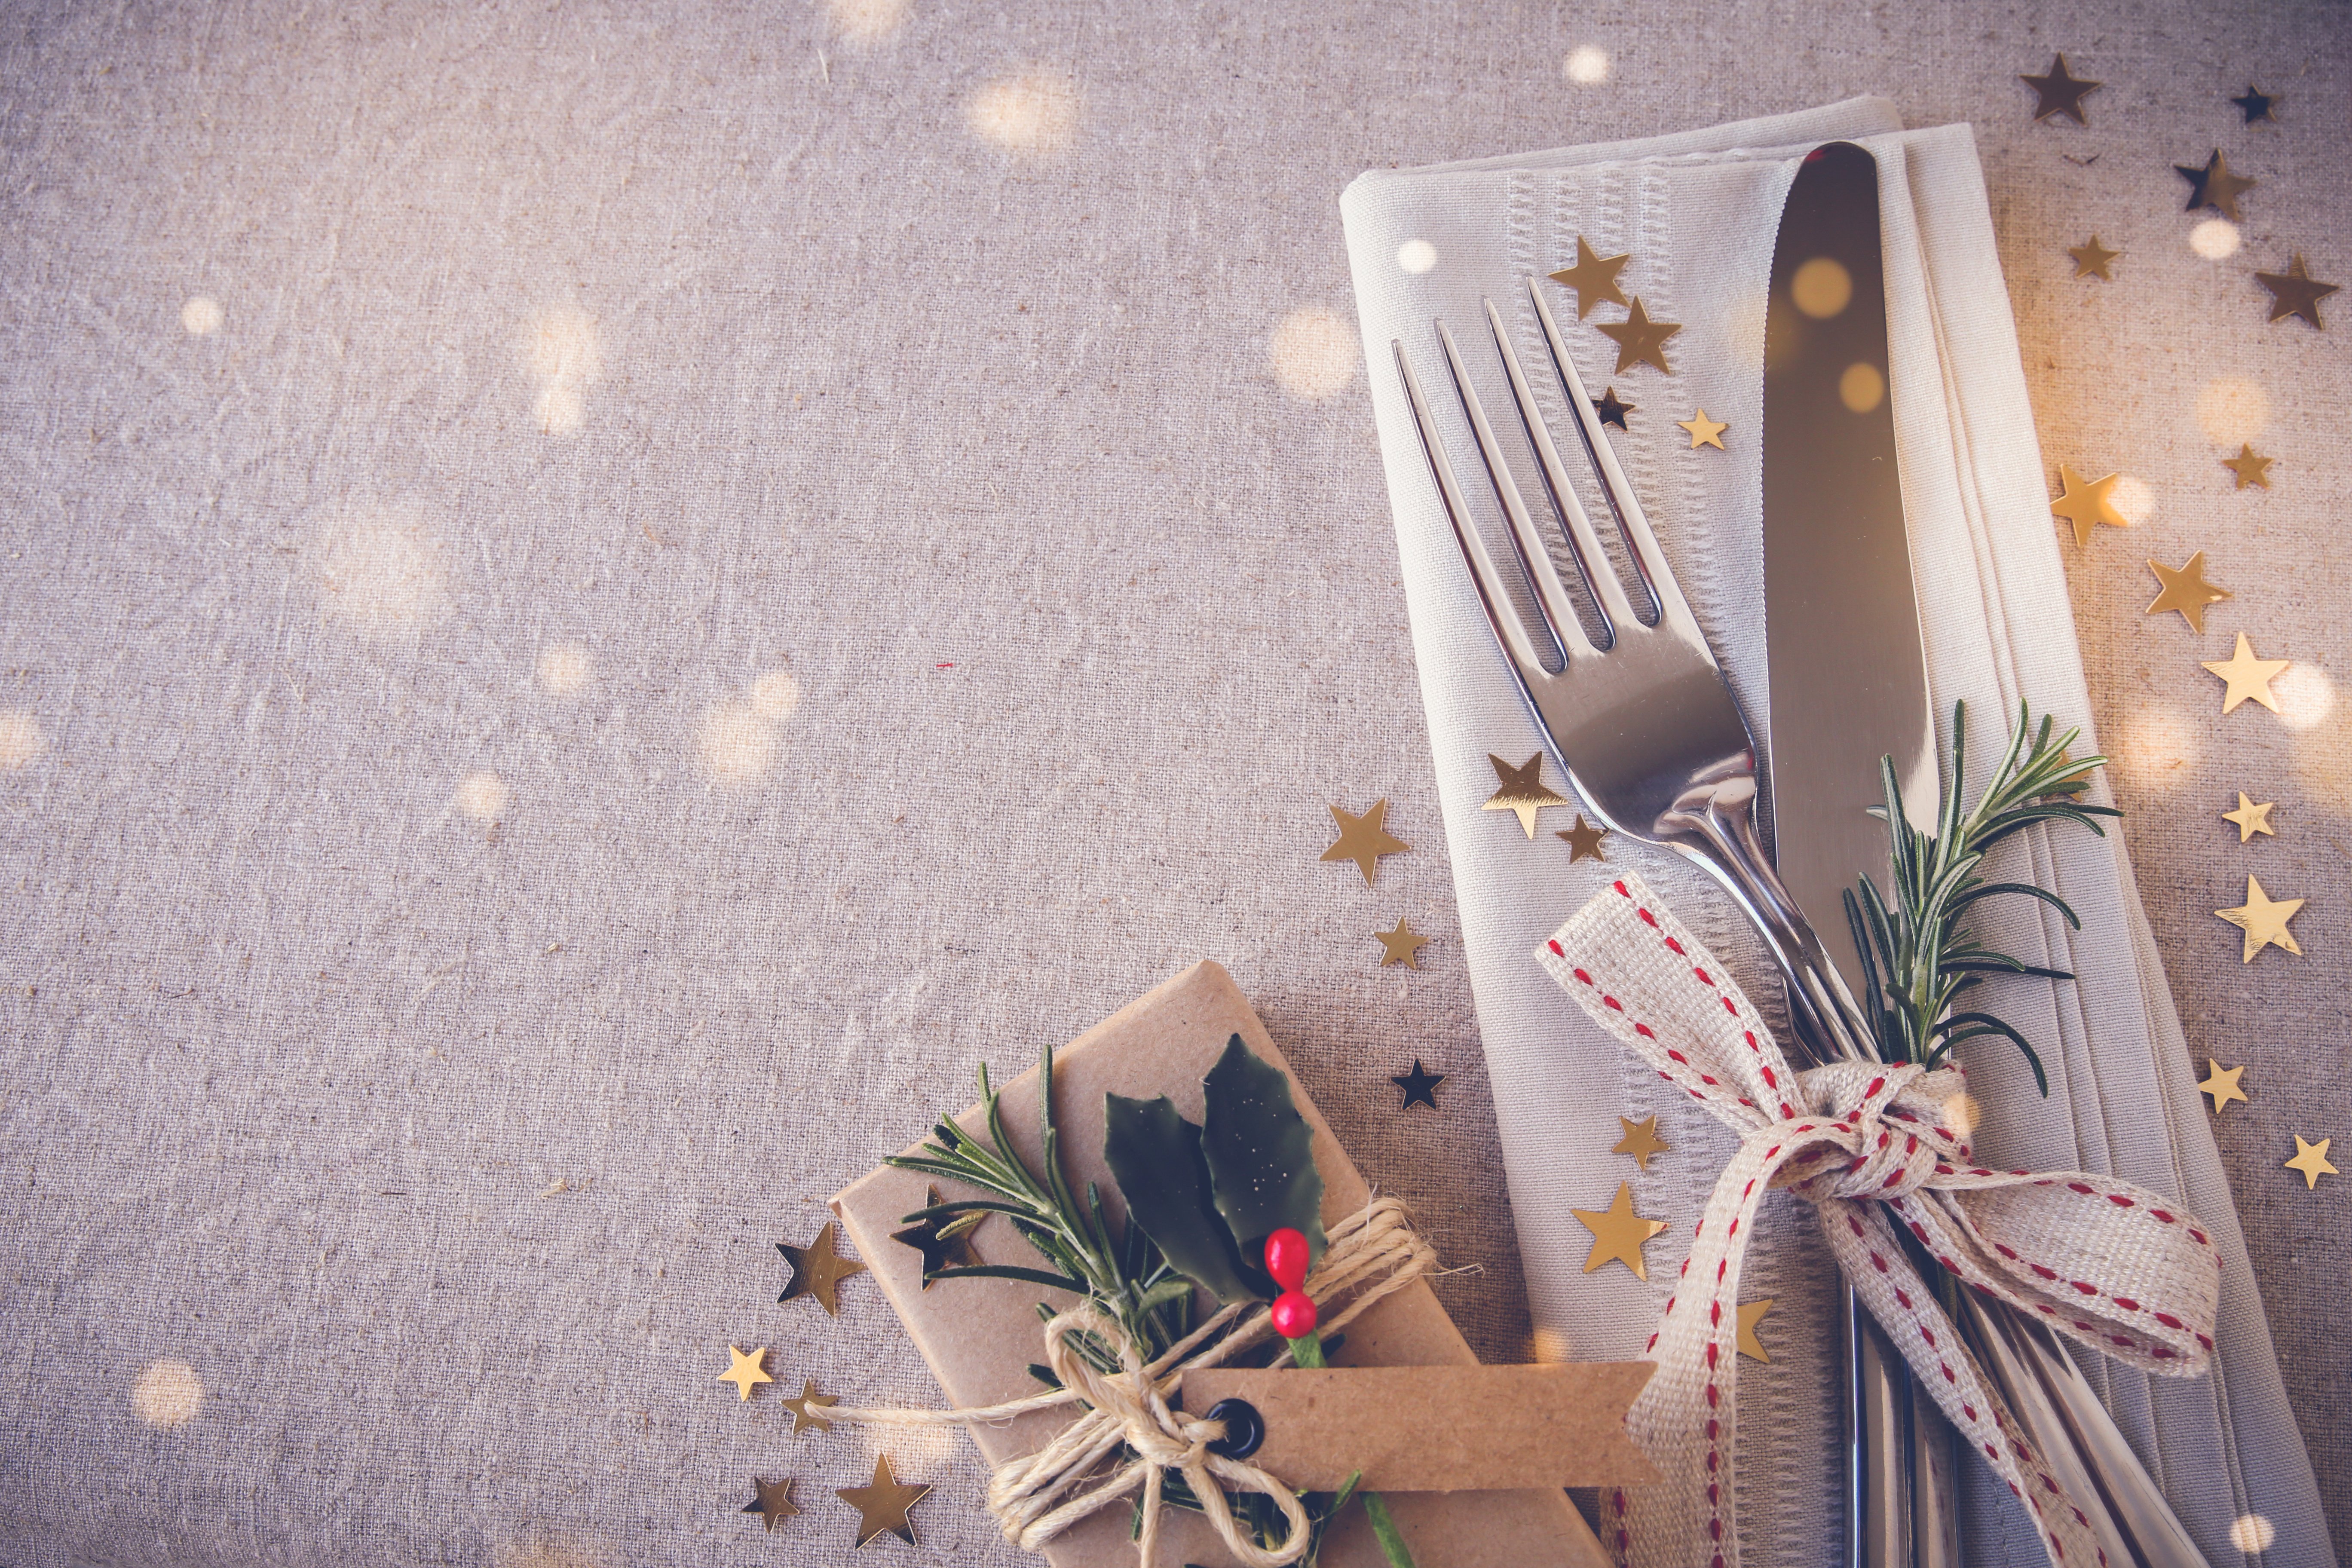 ΙΕΛΚΑ: Αμετάβλητη η μέση τιμή για το χριστουγεννιάτικο τραπέζι στις μεγάλες αλυσίδες σούπερ μάρκετ το 2020 σε σχέση με το 2019